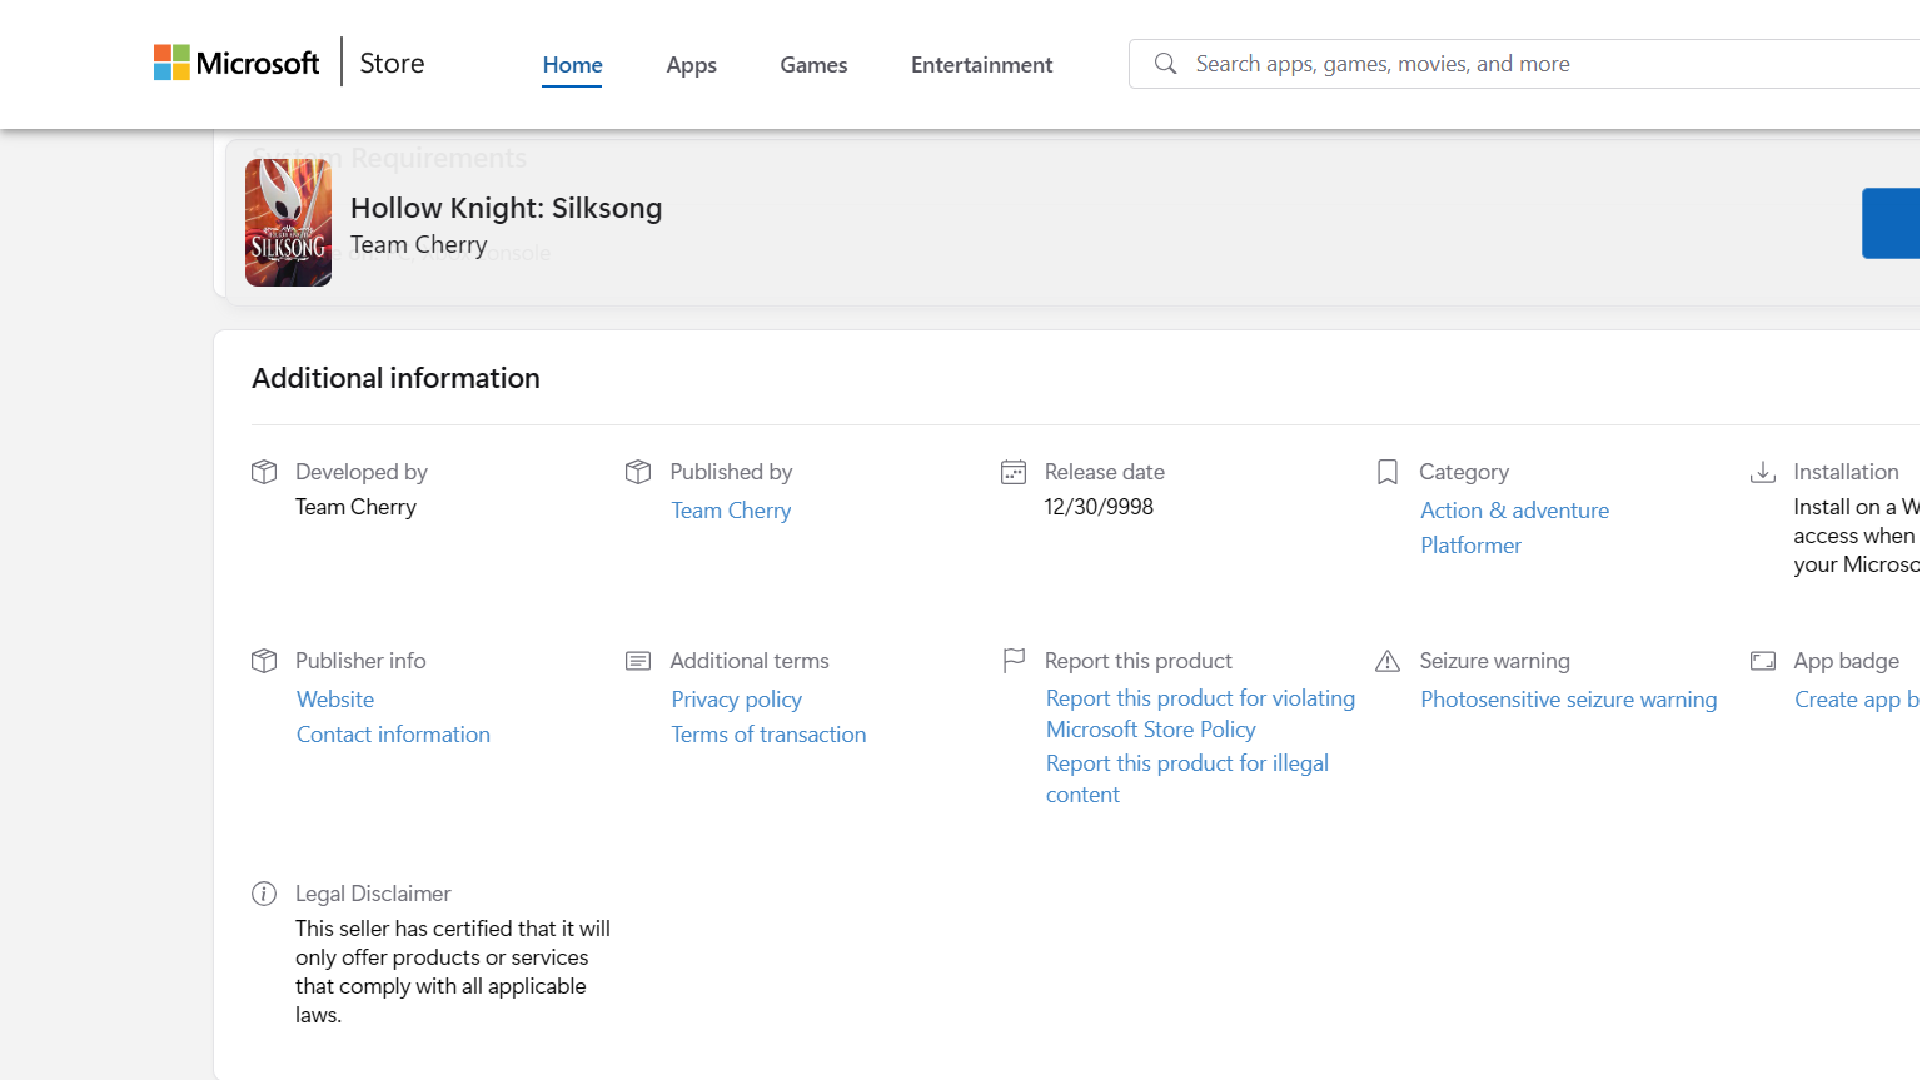 تاریخ انتشار اشتباه Hollow Knight: Silksong در فروشگاه مایکروسافت